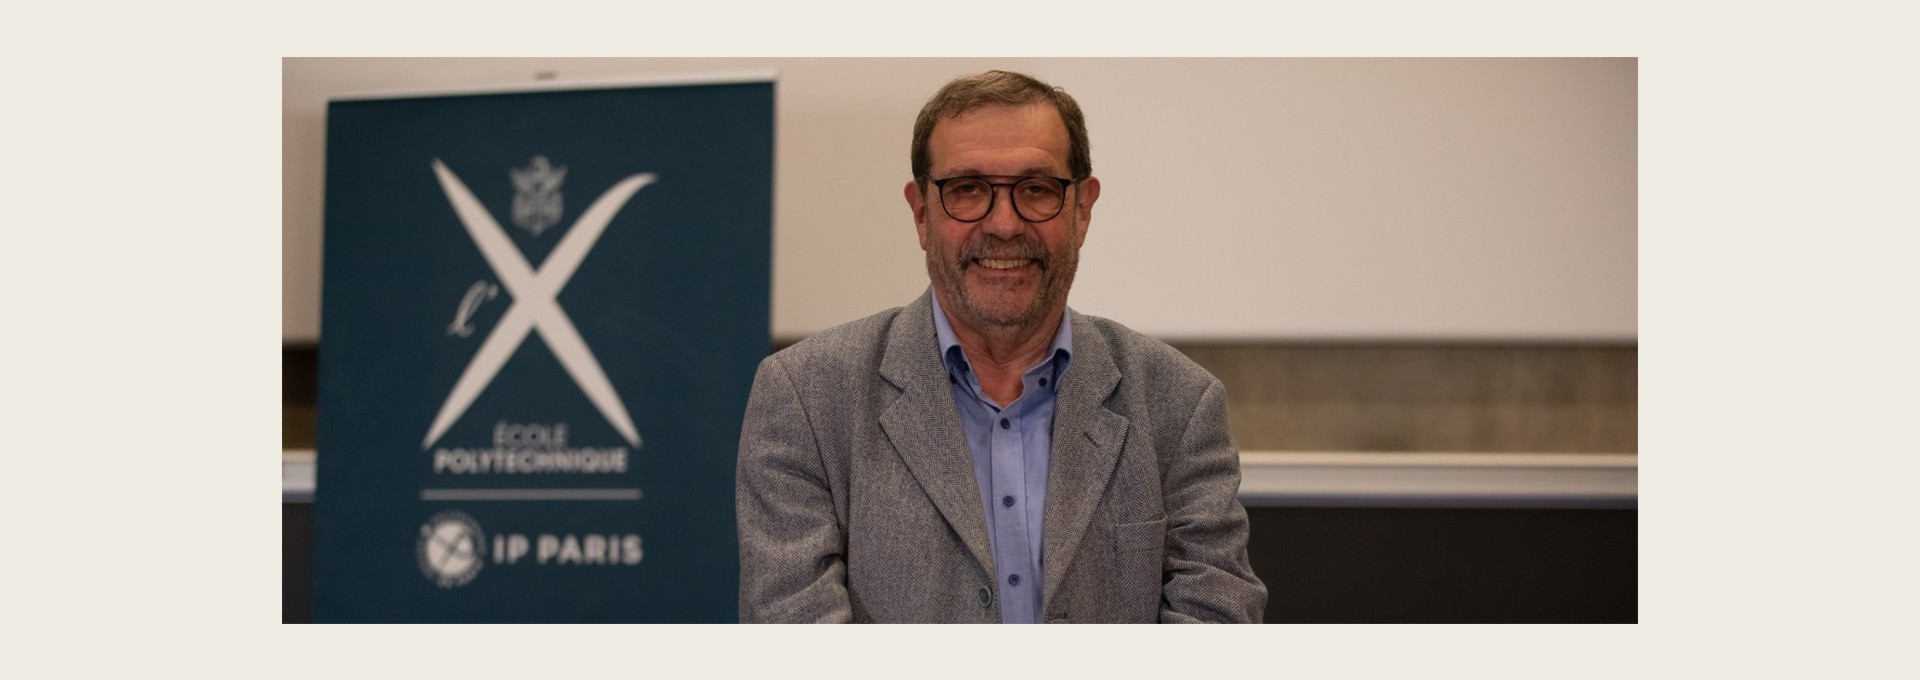 Alain Aspect, professeur à l’X, co-lauréat du Prix Nobel de Physique 2022